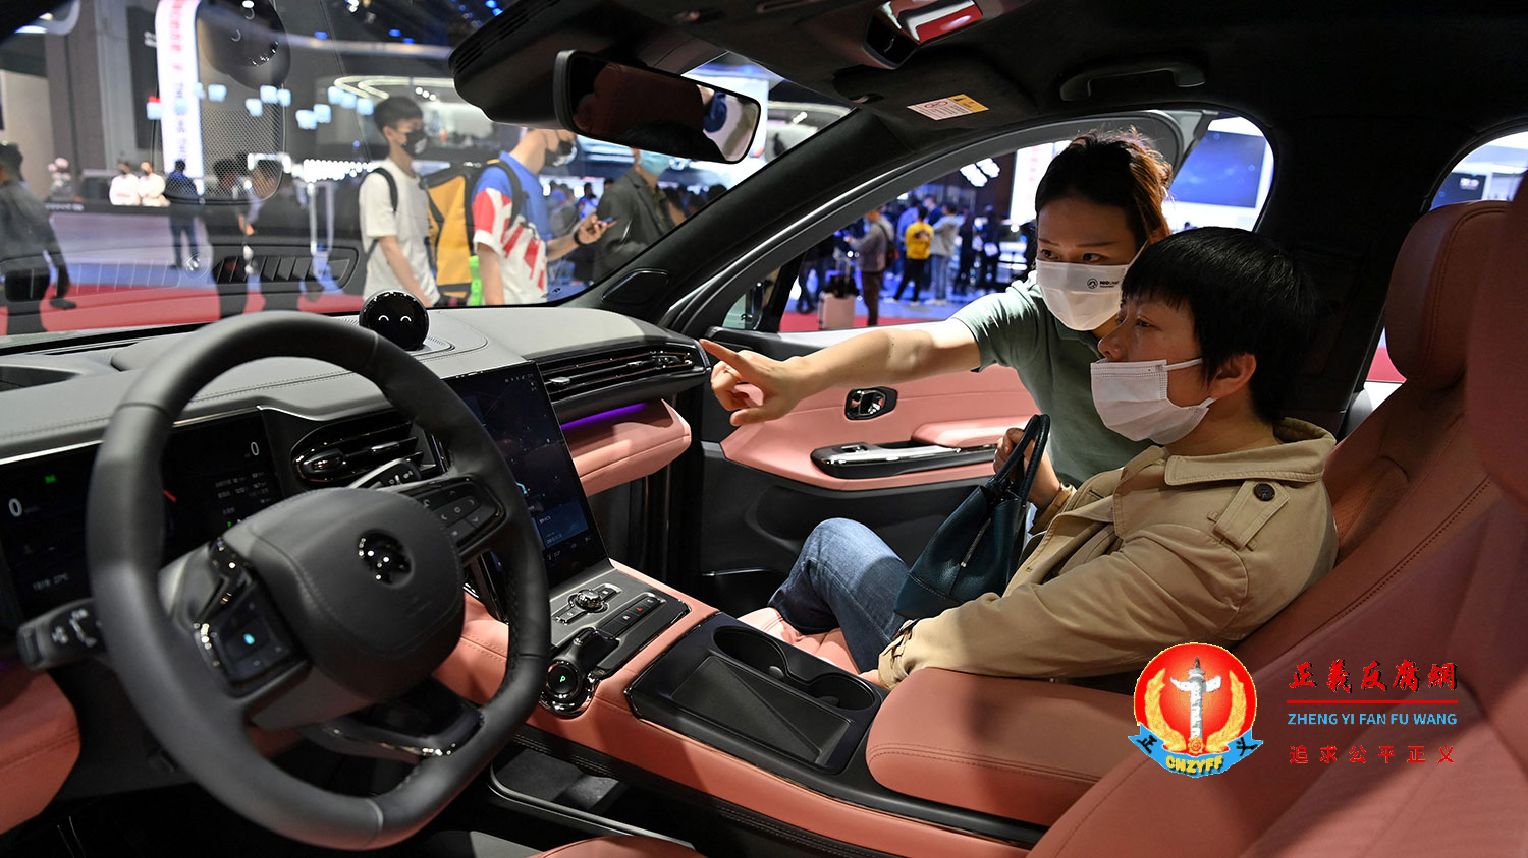 国产自动驾驶系统失灵致命 中国电动车安全再受质疑